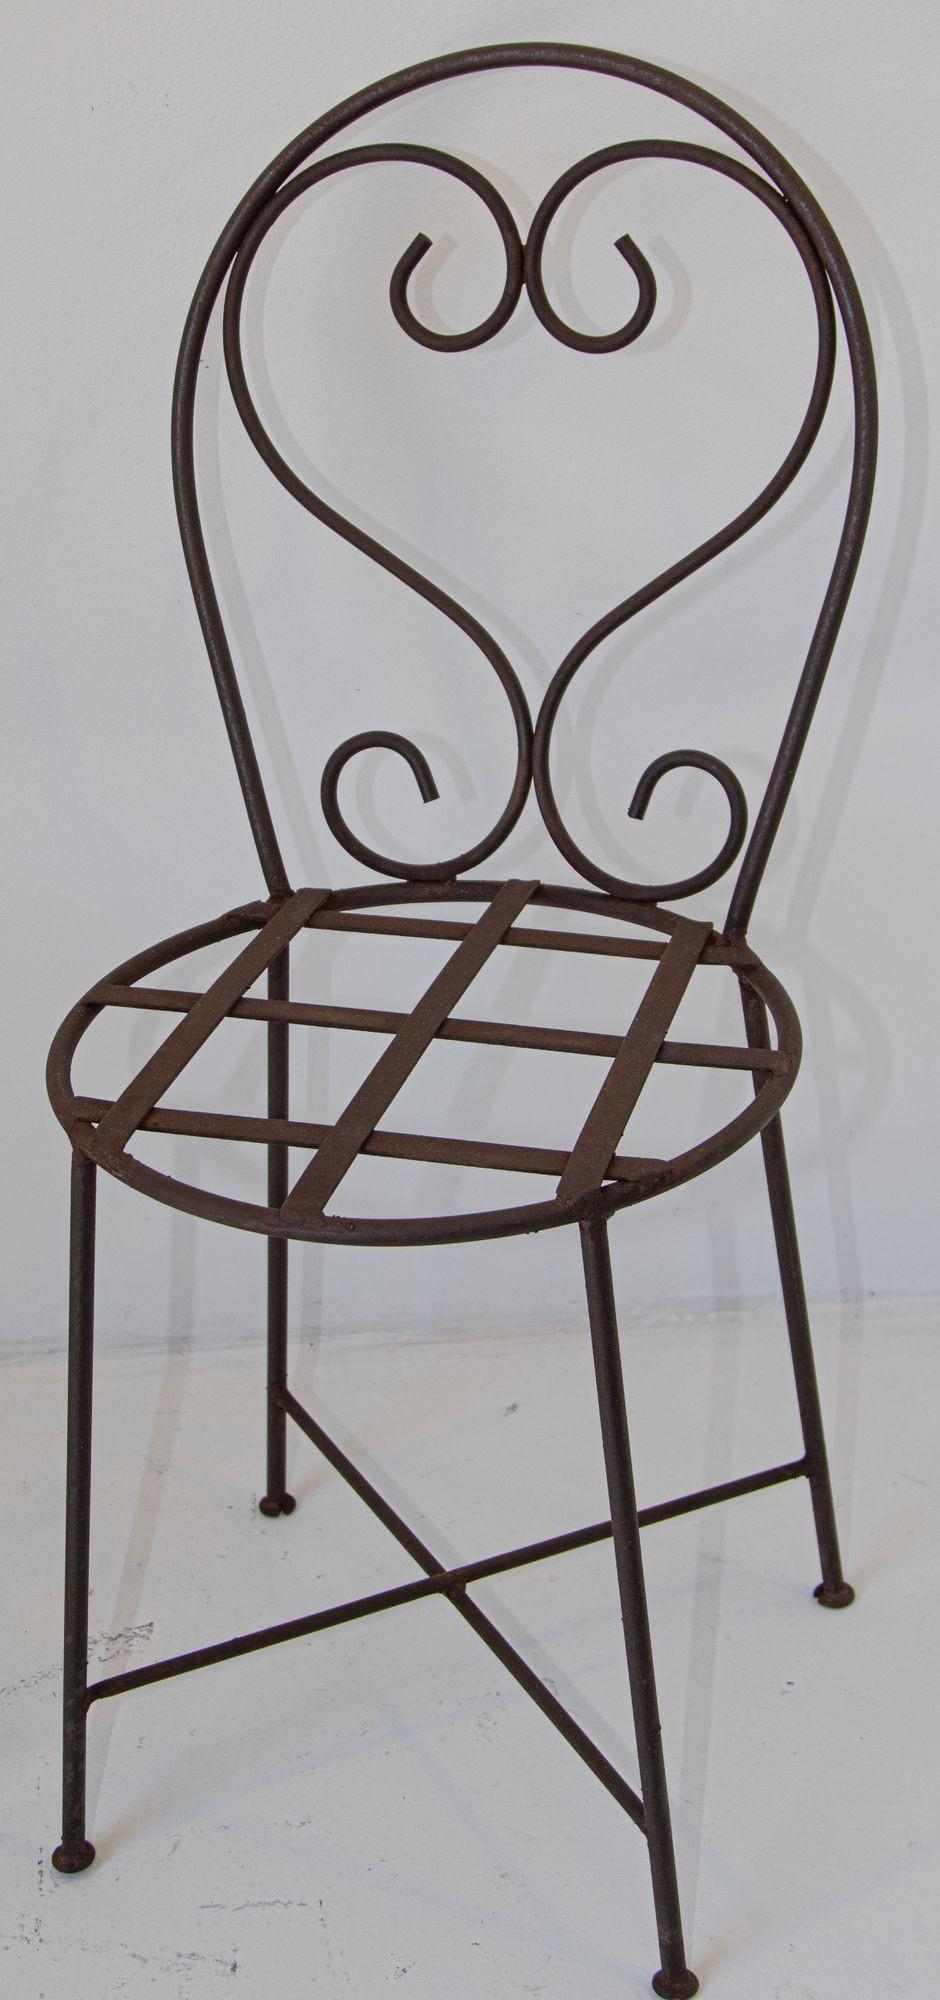 Ancienne paire de chaises de jardin en fer forgé.
Chaises de jardin Heart back
Dimensions : 
Mesures : 36